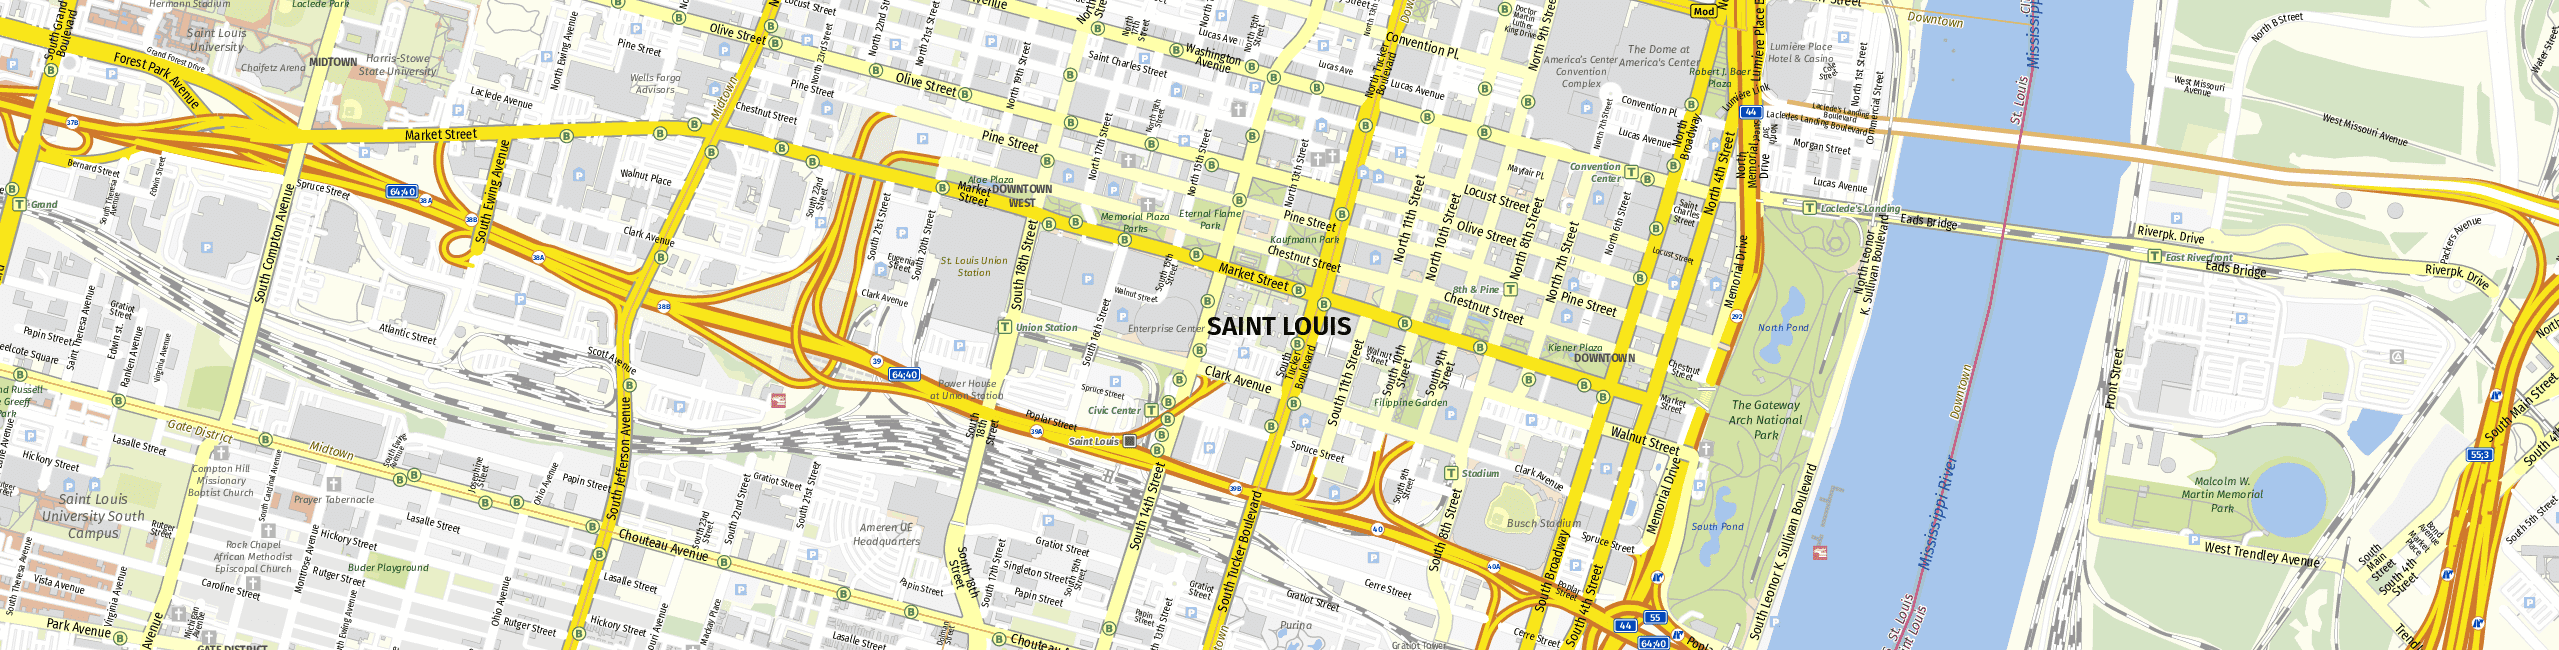 Stadtplan St. Louis zum Downloaden.